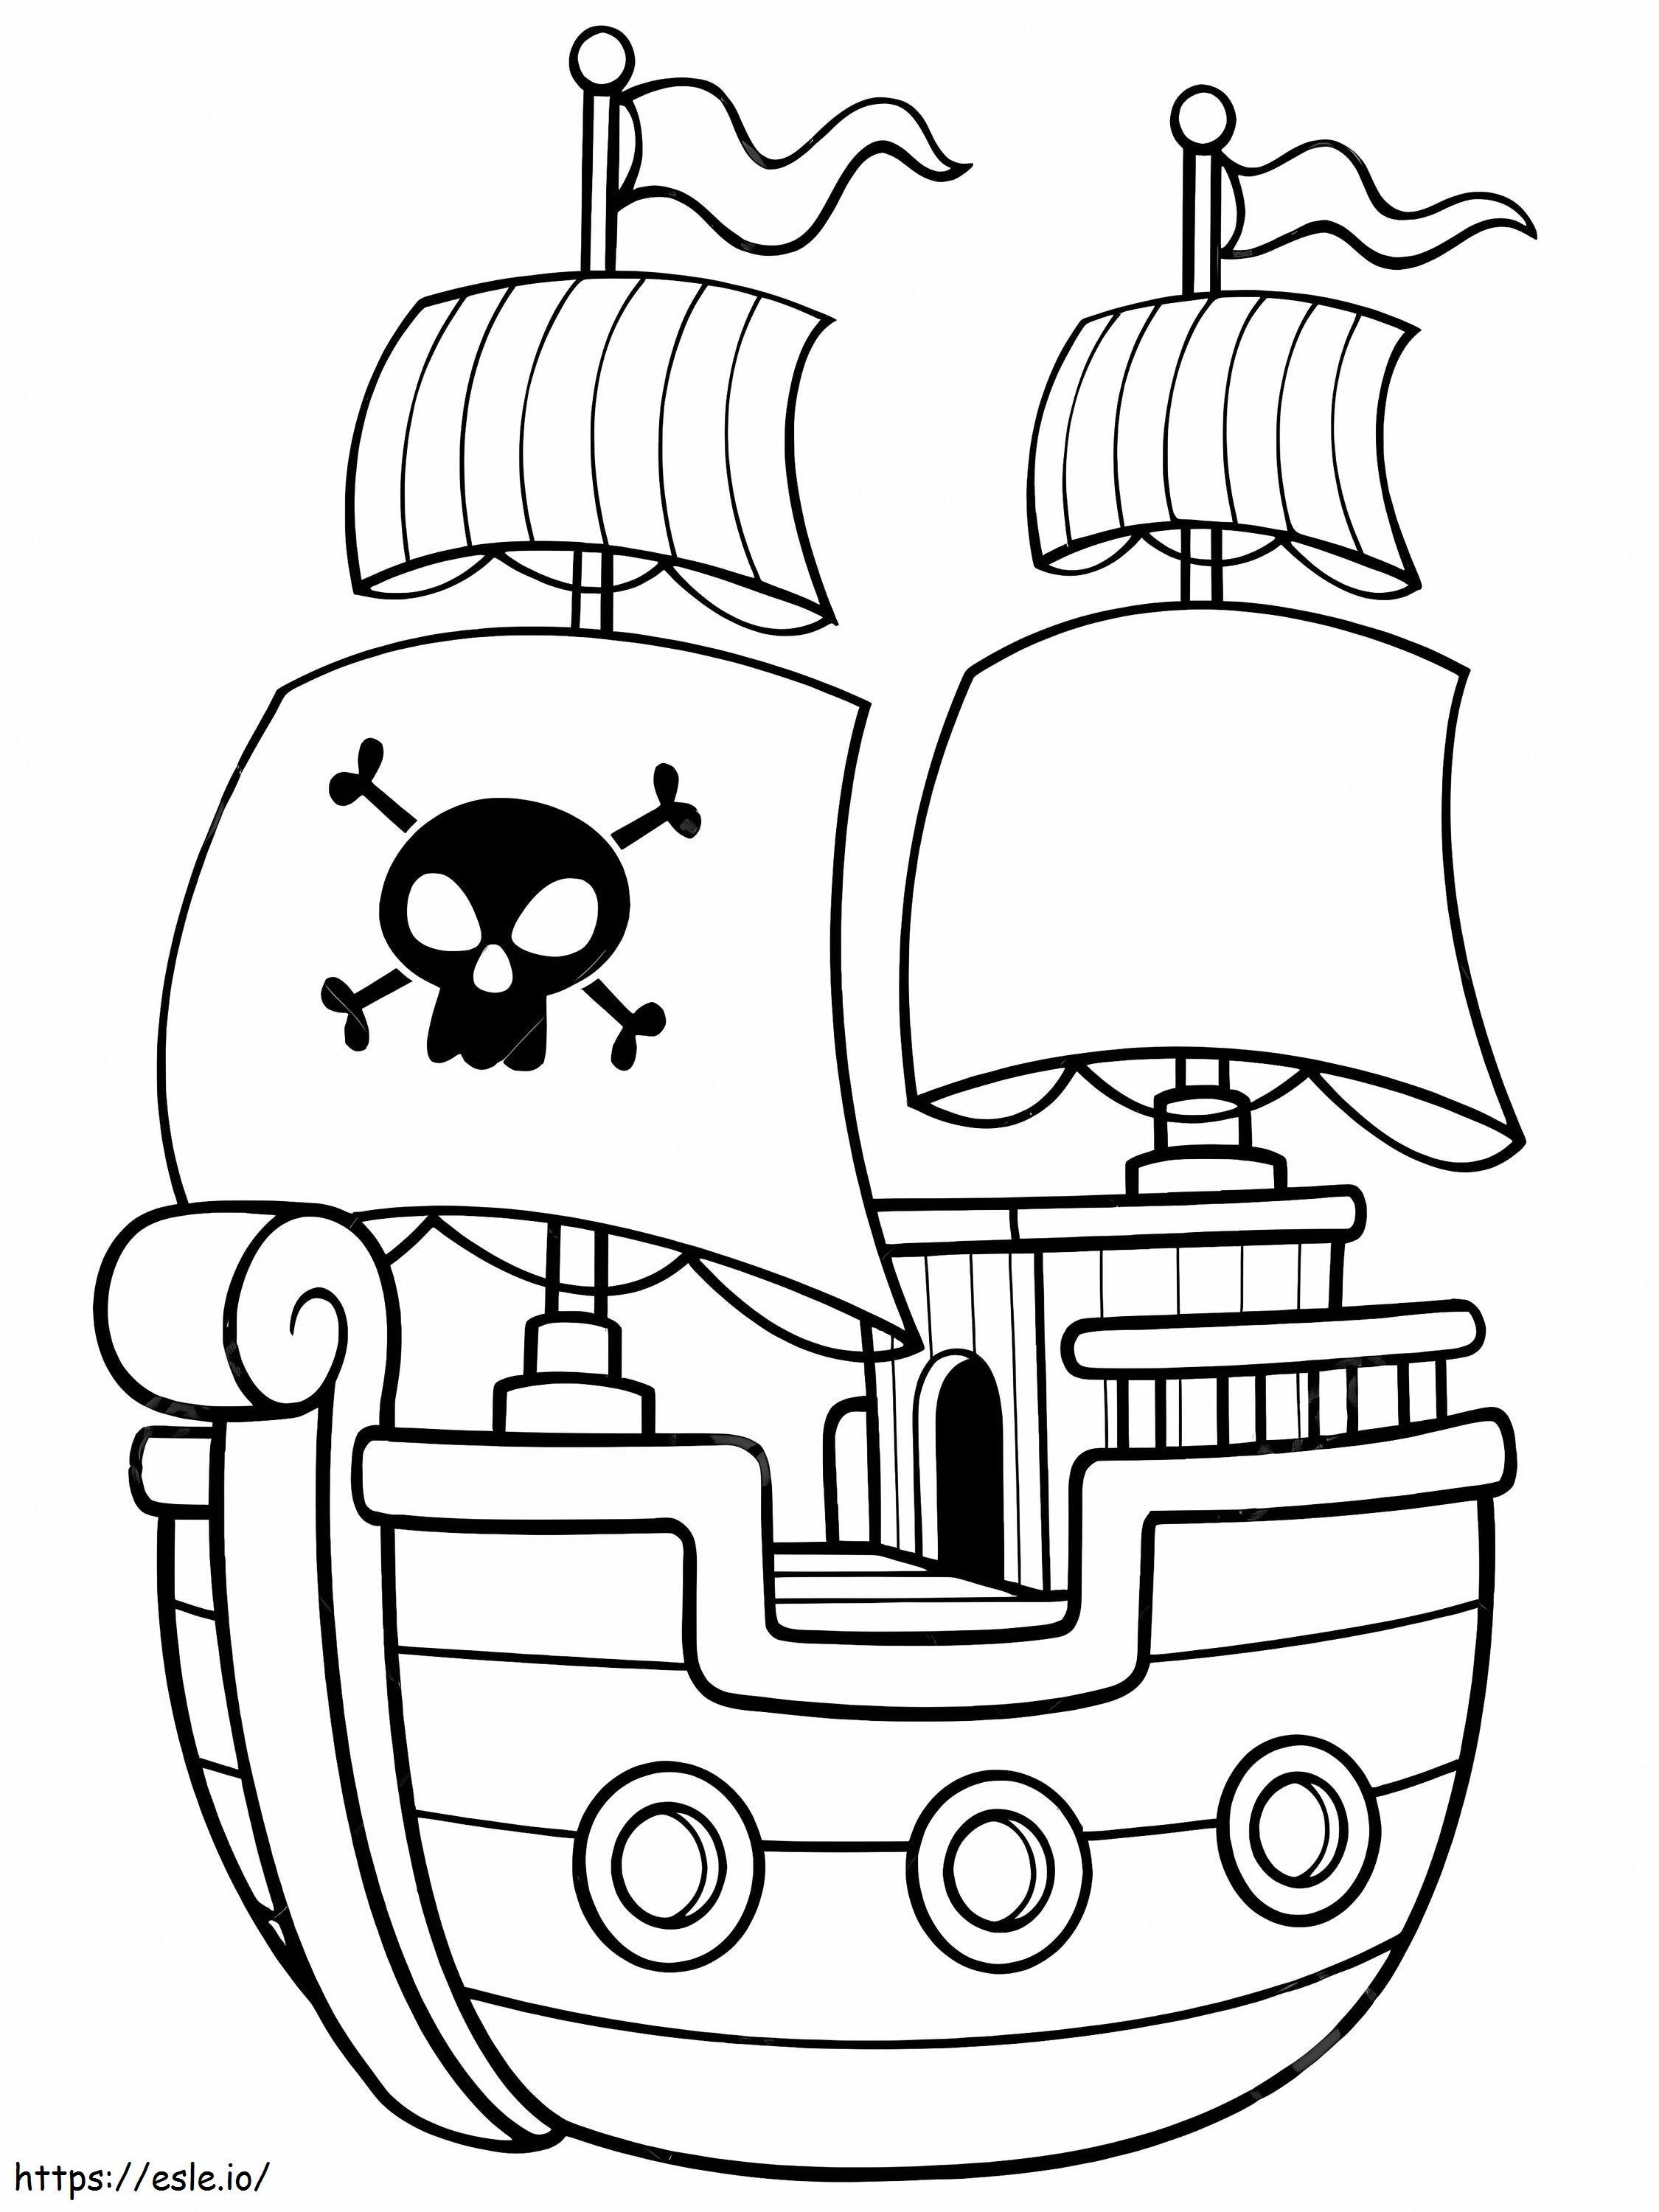 Barco pirata sencillo para colorear